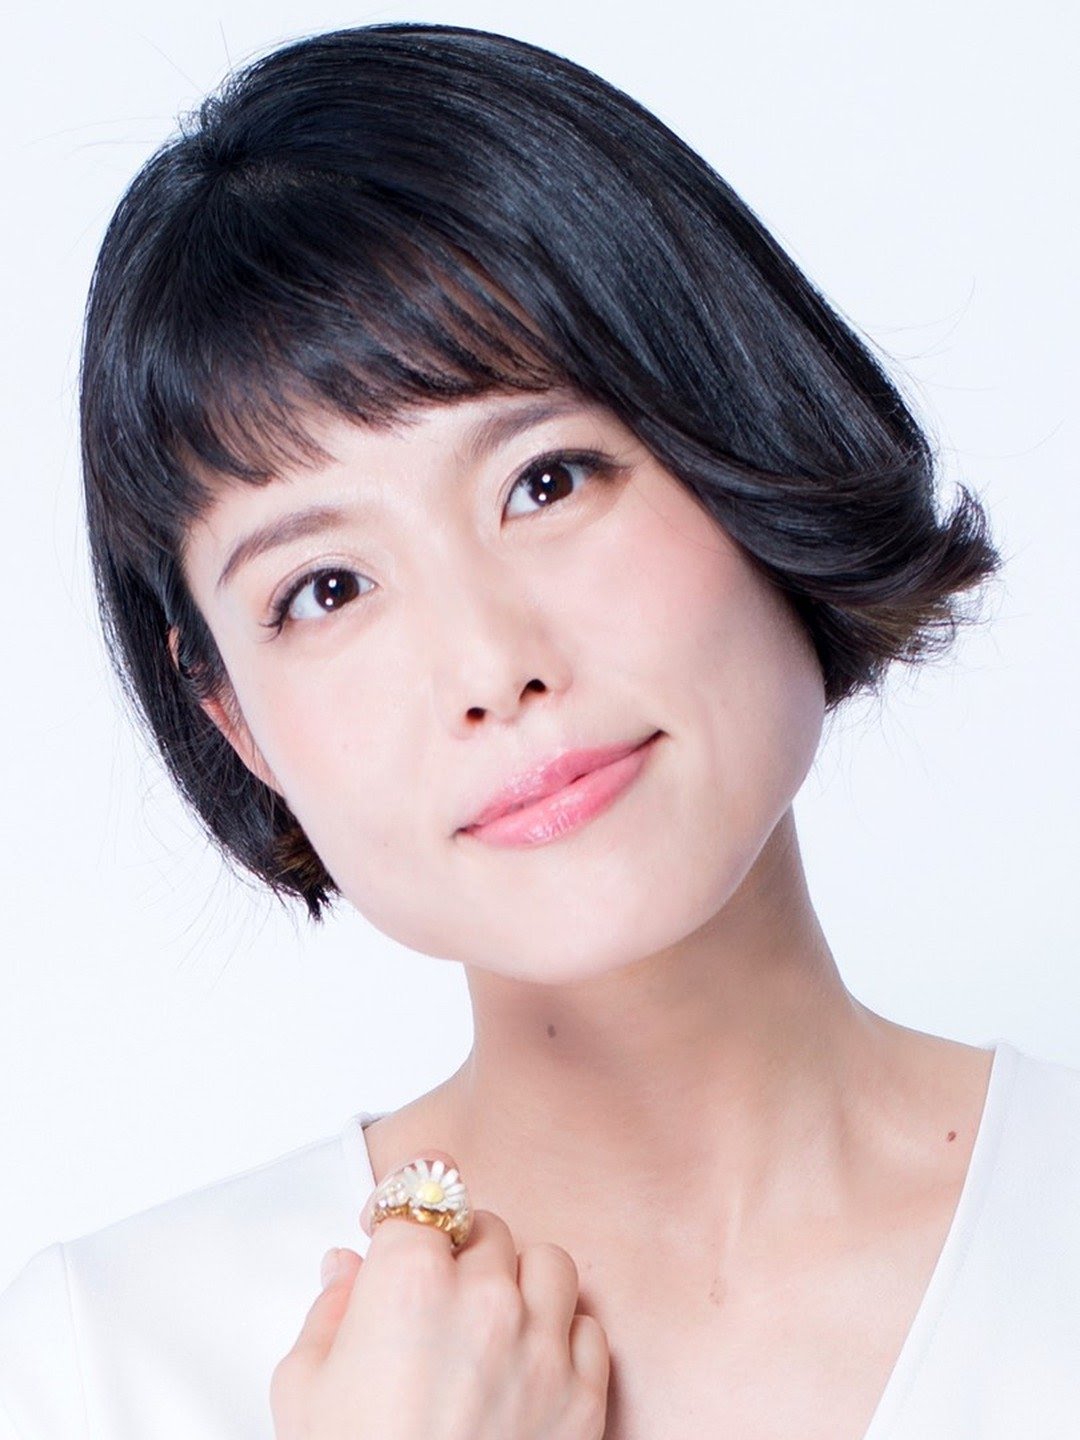 Miyuki Sawashiro Japanese Actress, Voice Actress